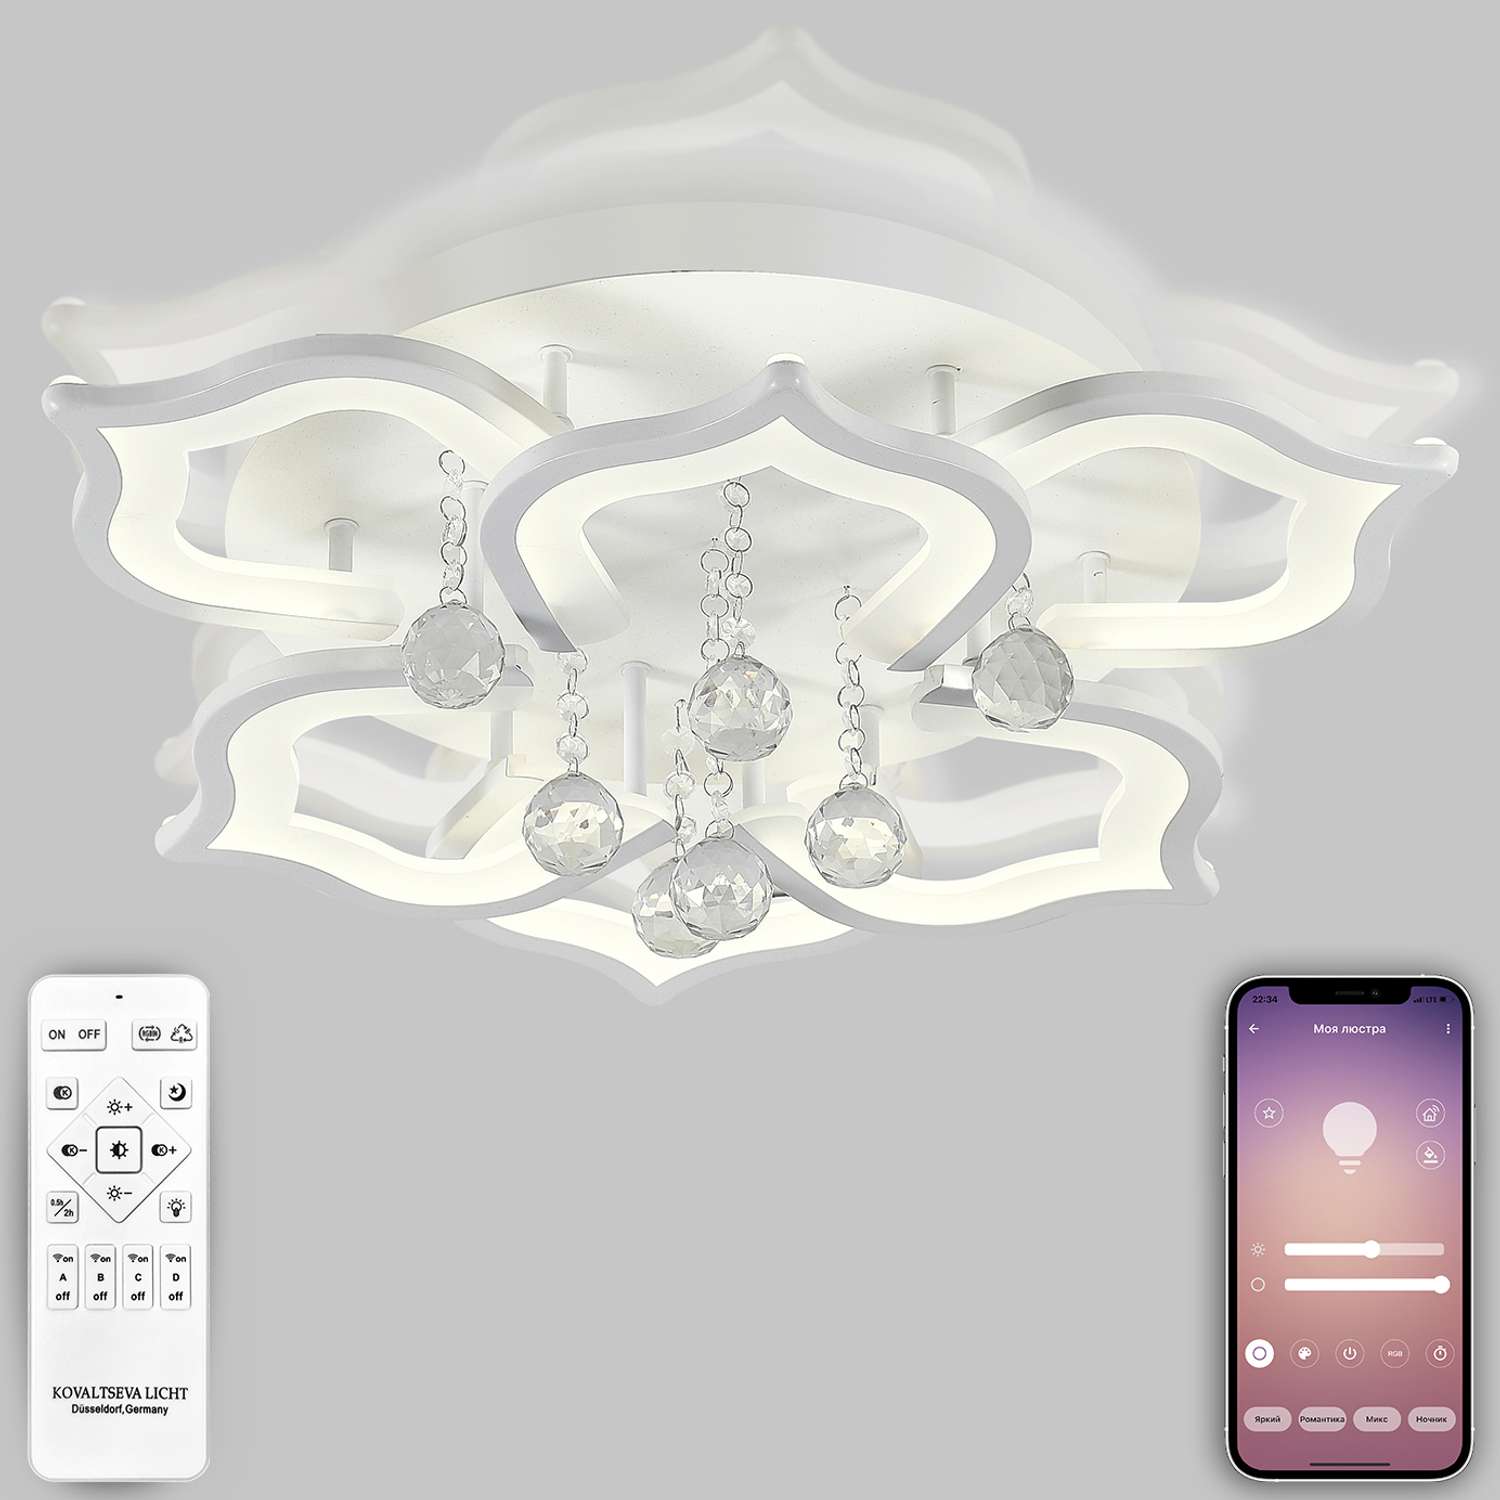 Светодиодный светильник NATALI KOVALTSEVA люстра 100W белый LED - фото 1